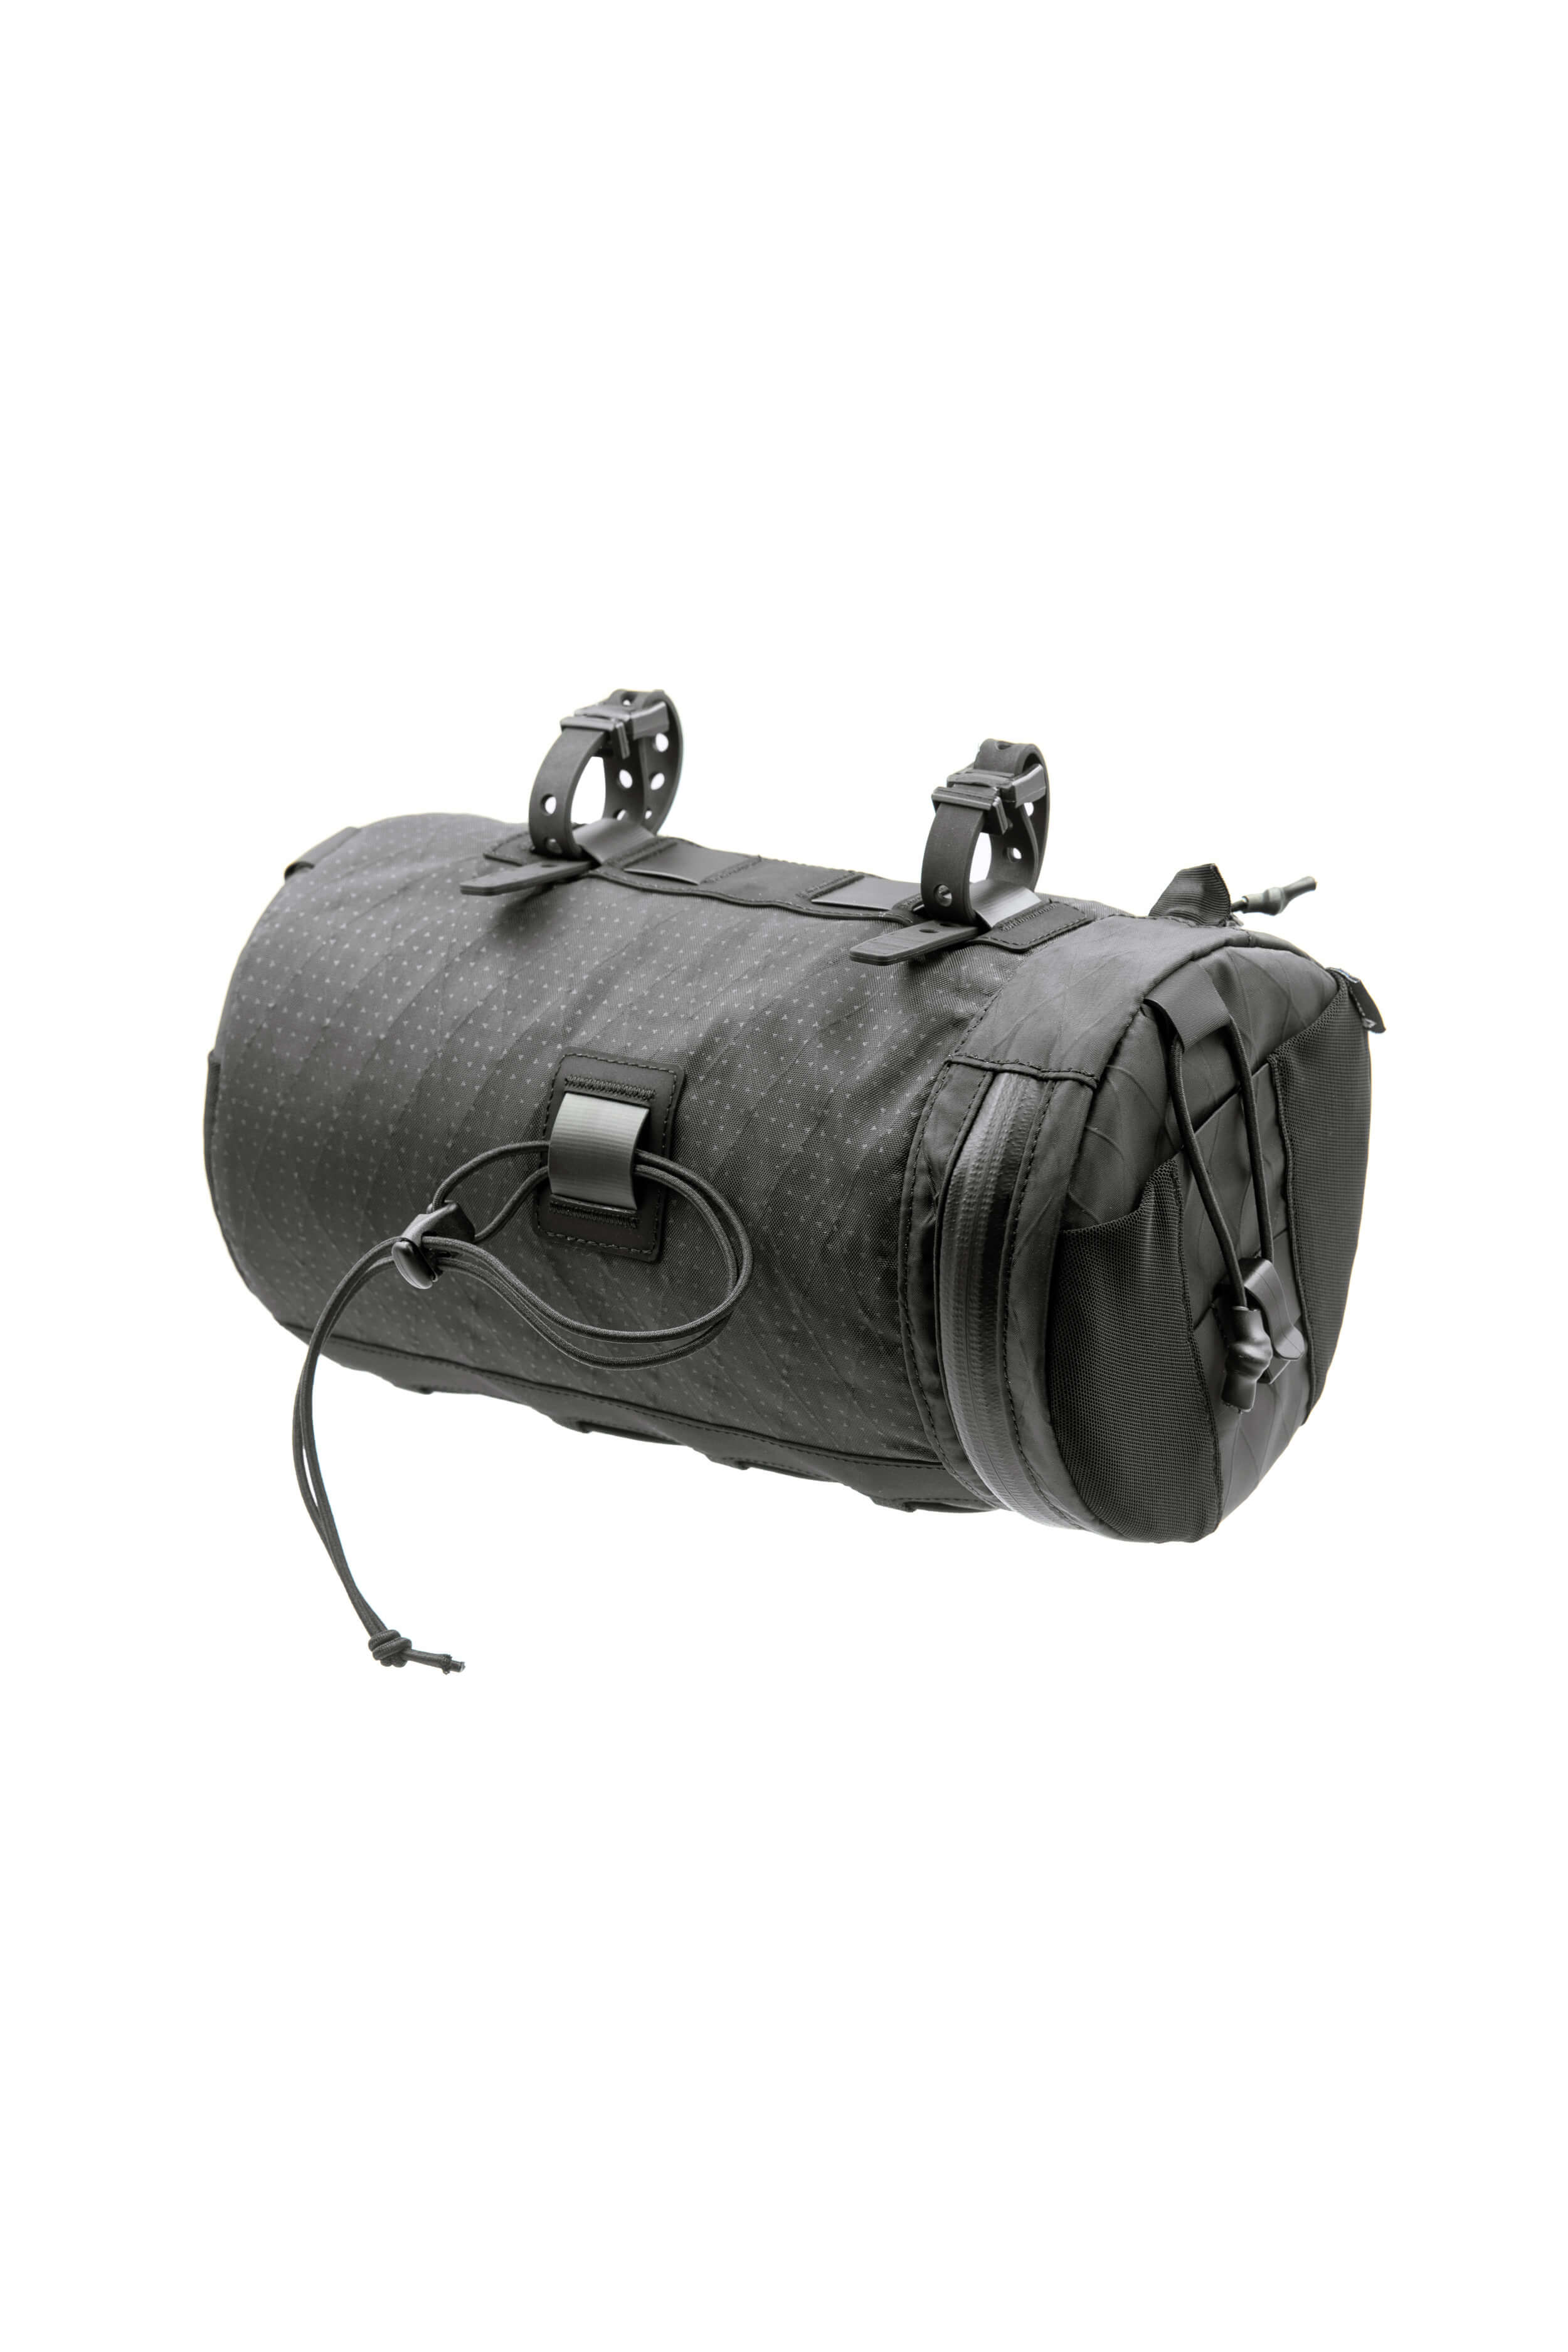 Smuggler HC Large Handlebar Bag V1 Accessories  - Orucase